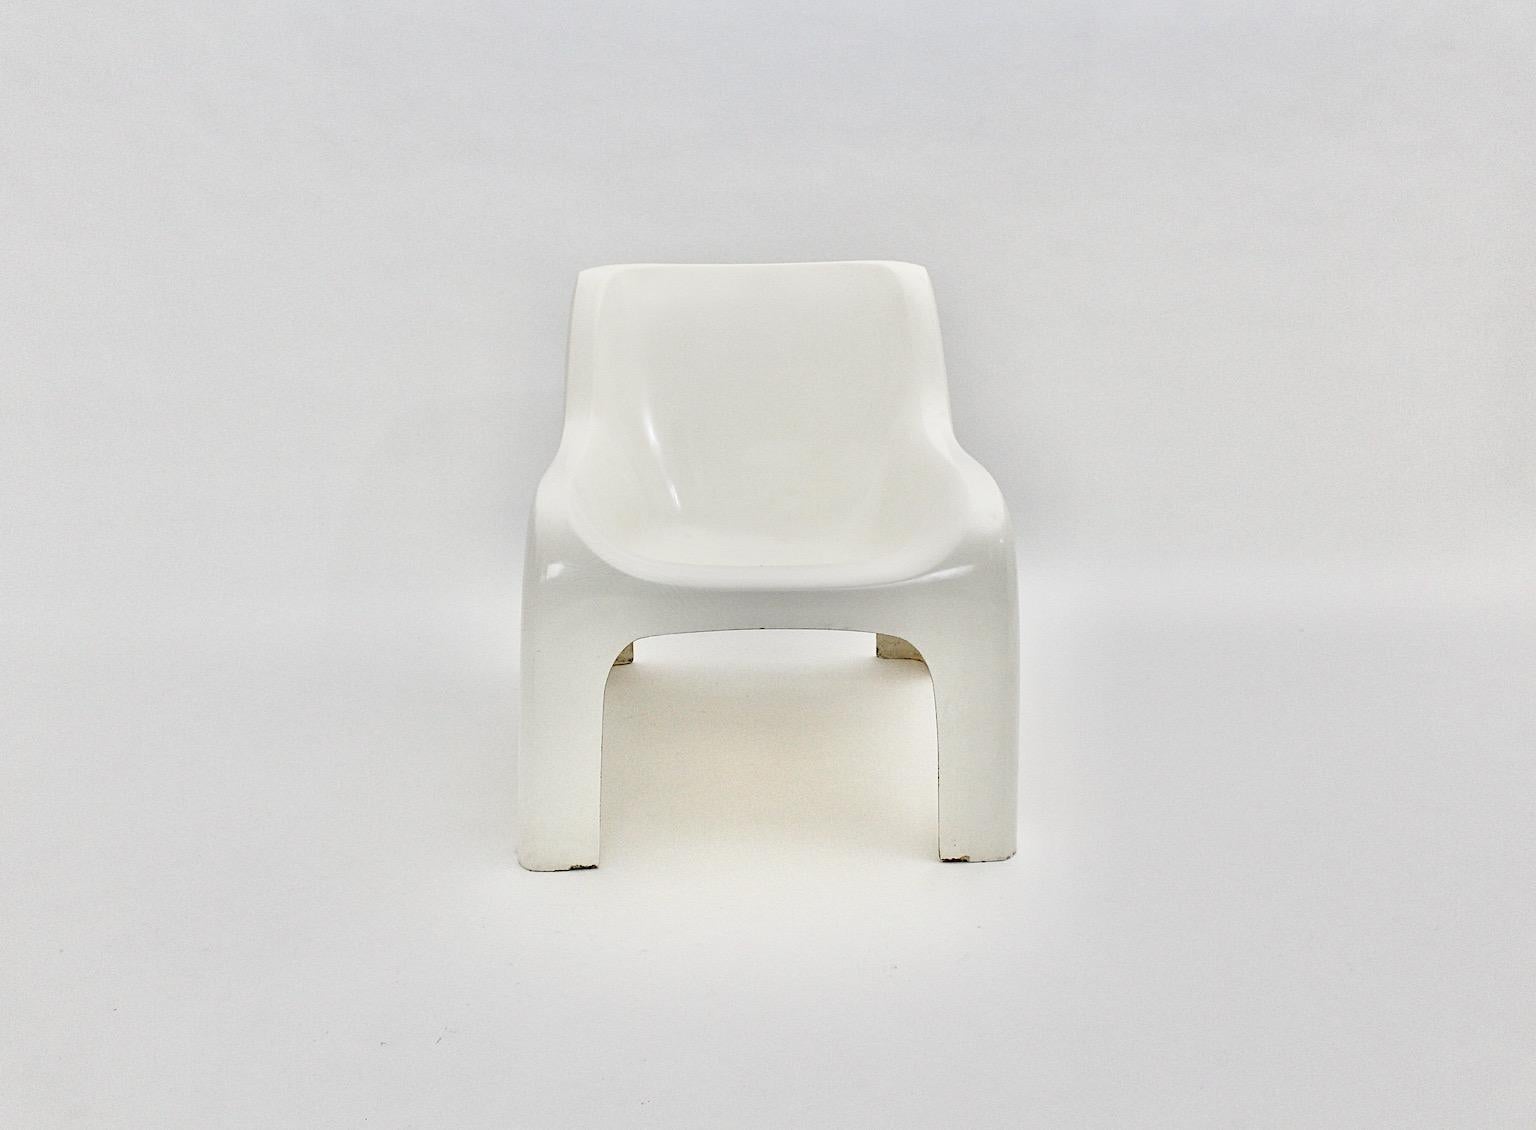 Space Age vintage lounge chair Modell Anatomia aus Kunststoff in weißer Farbe von Ahti Kotikoski für Asko 1968, Finnland.
Ein wunderschöner Vintage-Sessel aus der Zeit des Weltraumzeitalters, entworfen von Ahti Kotikoski für Asko, Finnland.